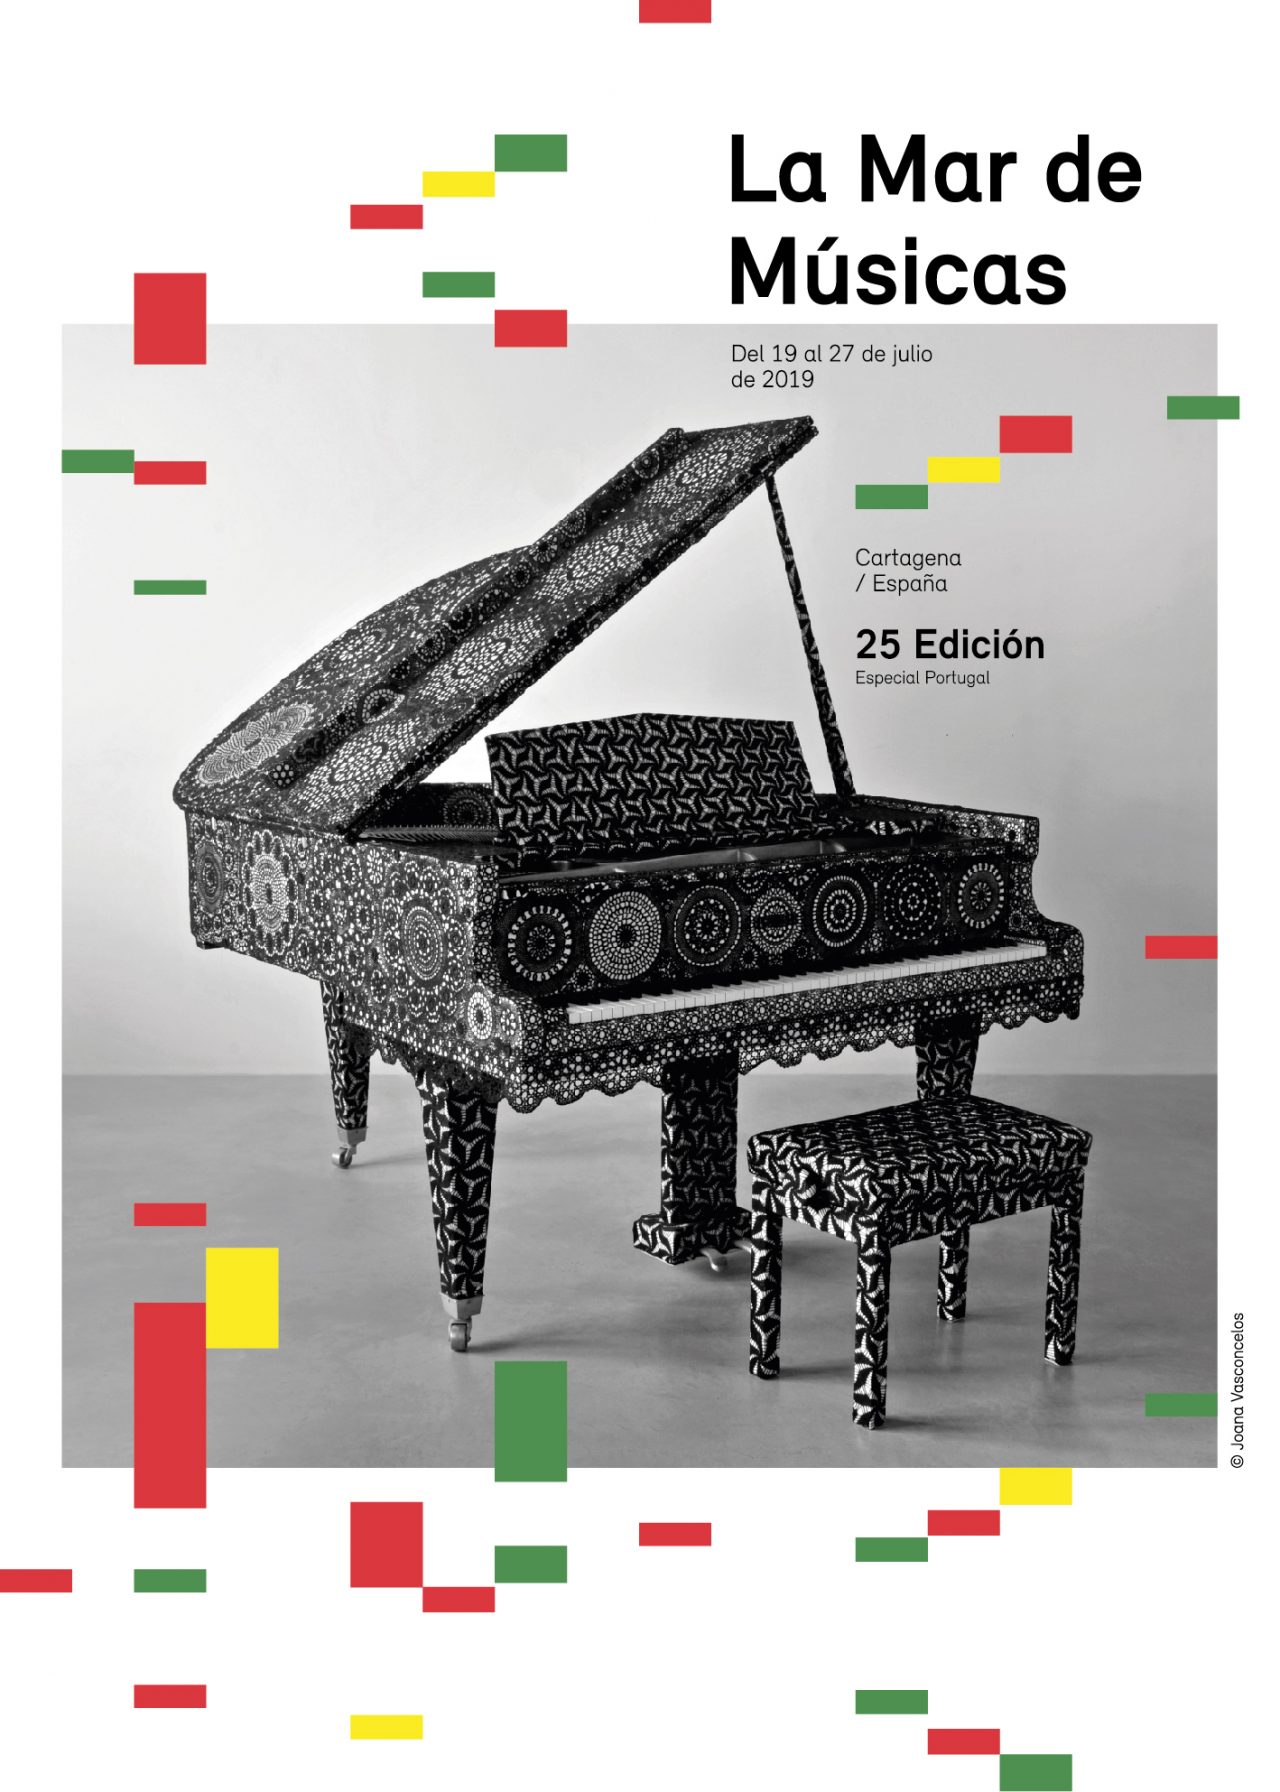 La Mar de Músicas 2019 elige Portugal como protagonista